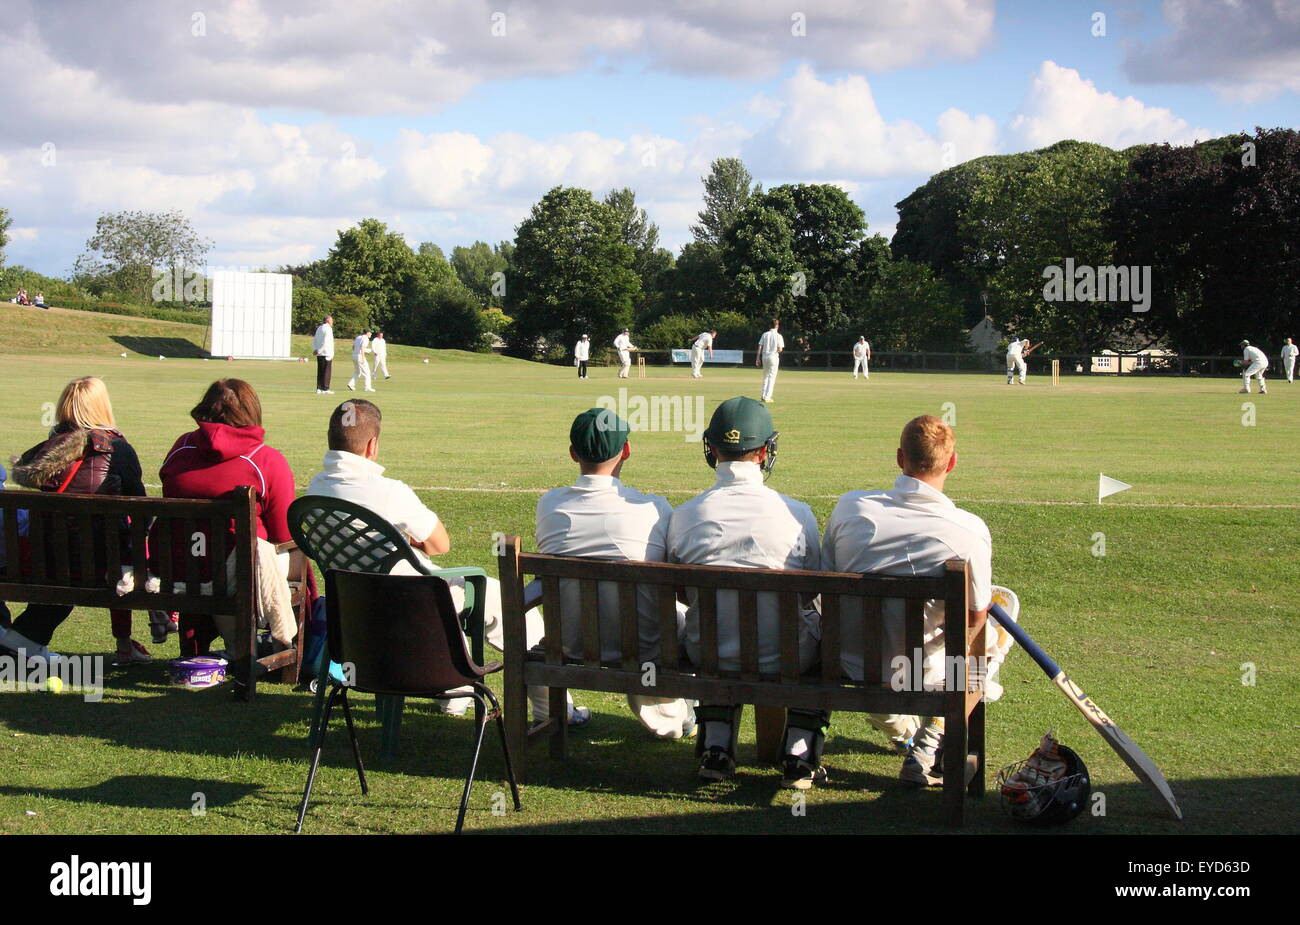 Cricketers watch theri coéquipiers rivaliser dans un match dans un village du Yorkshire près de Rotherham, Angleterre, Royaume-Uni Banque D'Images